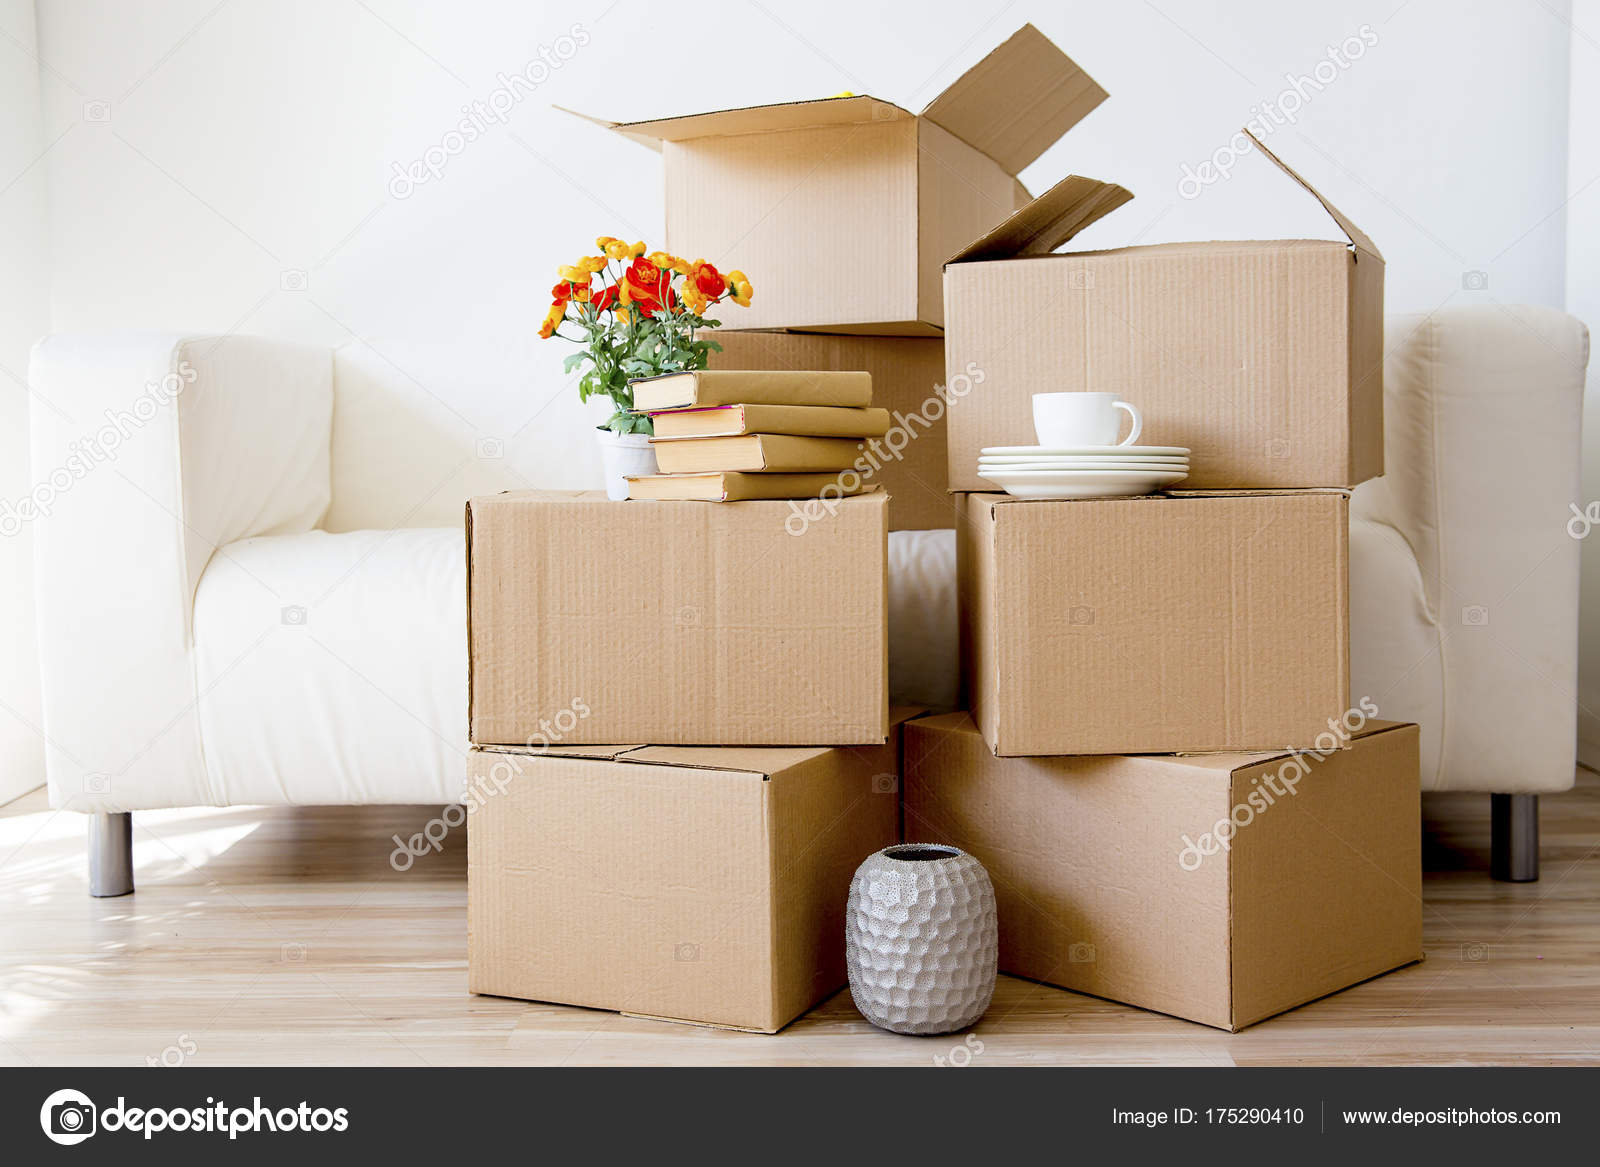 Kartonnen dozen - naar een huis ⬇ Stockfoto, rechtenvrije foto door © Lenanichizhenova #175290410